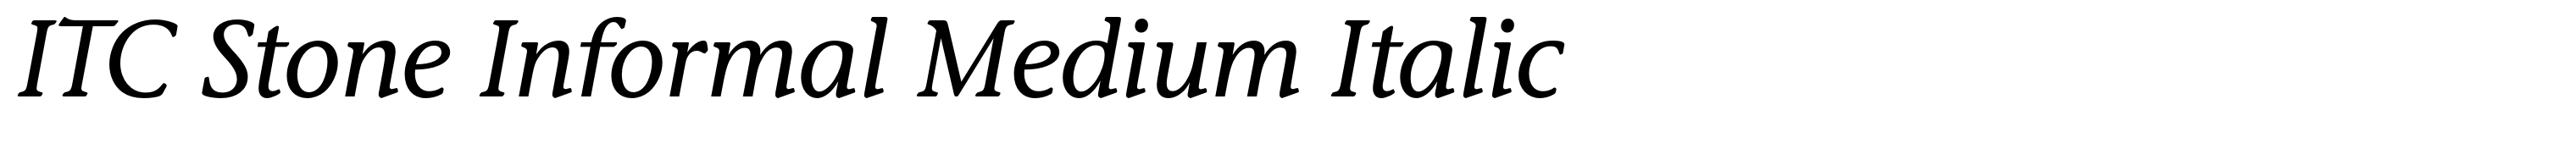 ITC Stone Informal Medium Italic